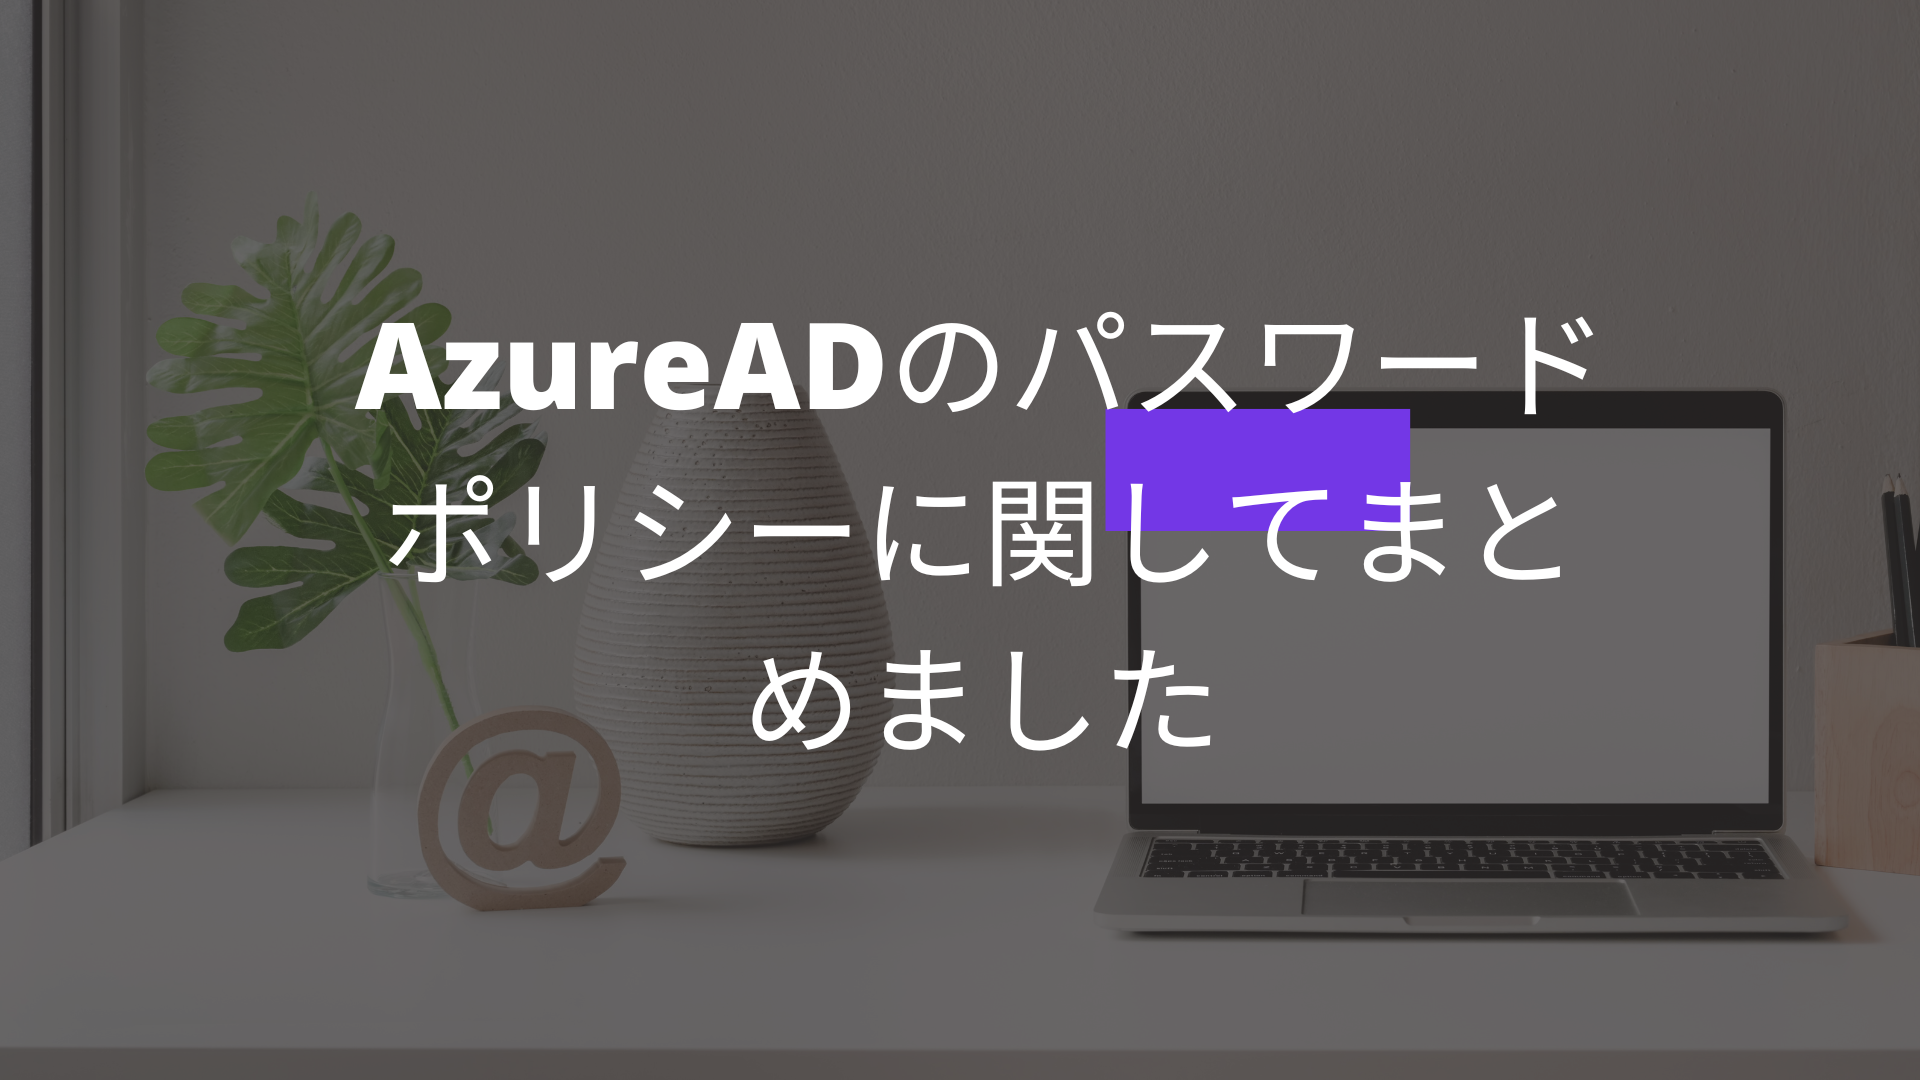 AzureADのパスワードポリシーに関してまとめました